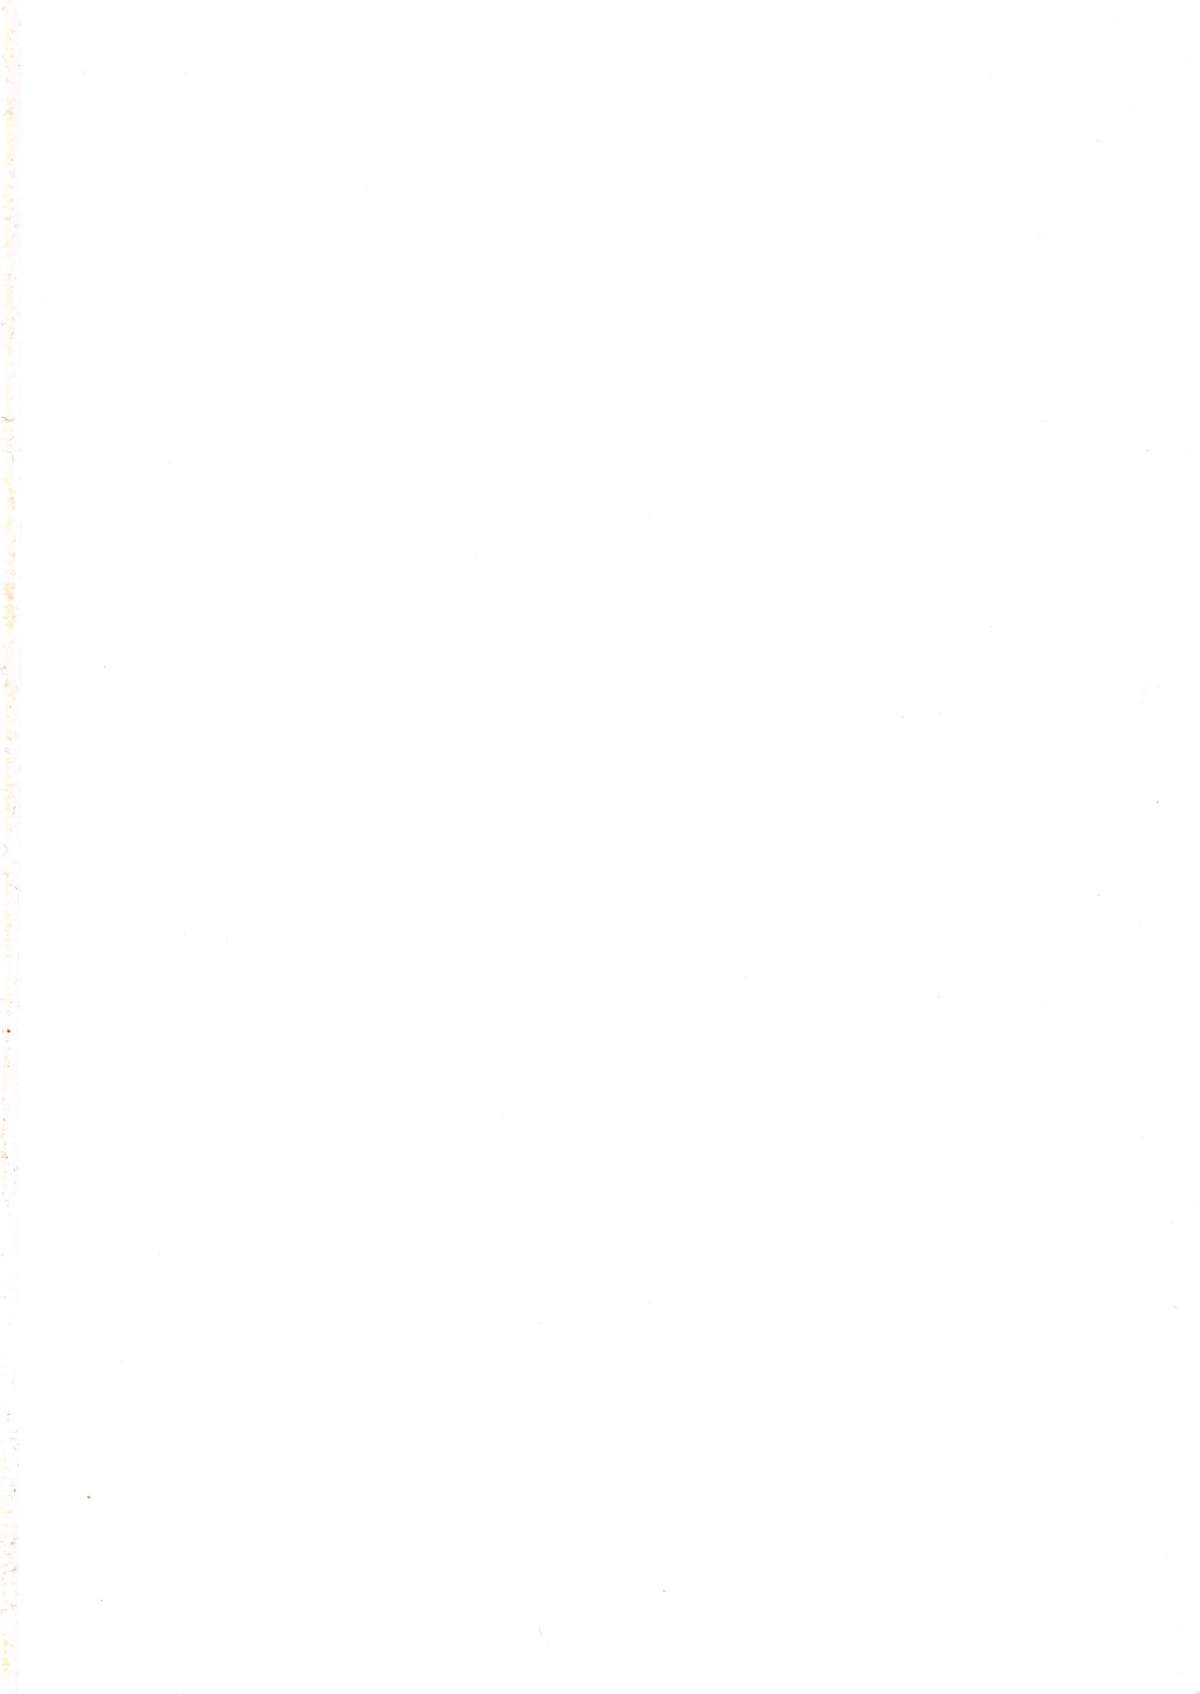 [A.S.T.A., スタジオ西東京with女神教典] 新婚合体 ゴーダンナー !? 完全版 '新婚初夜当日!!' (神魂合体ゴーダンナー!!)